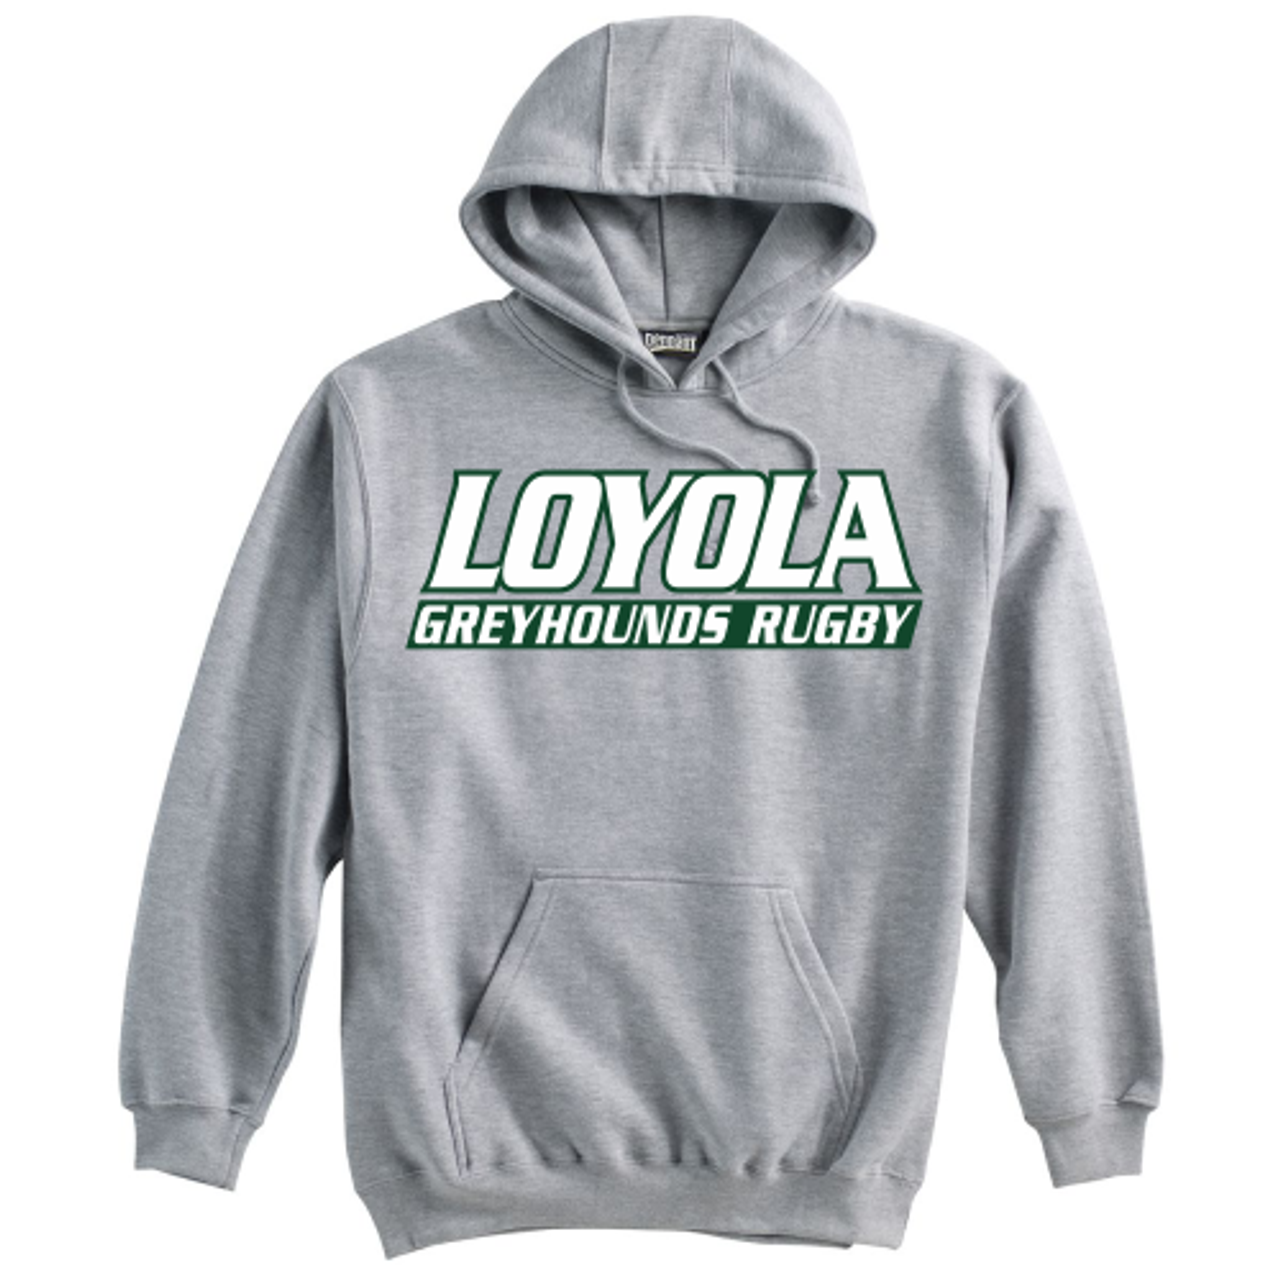 Loyola Men's Rugby Hoodie, Gray